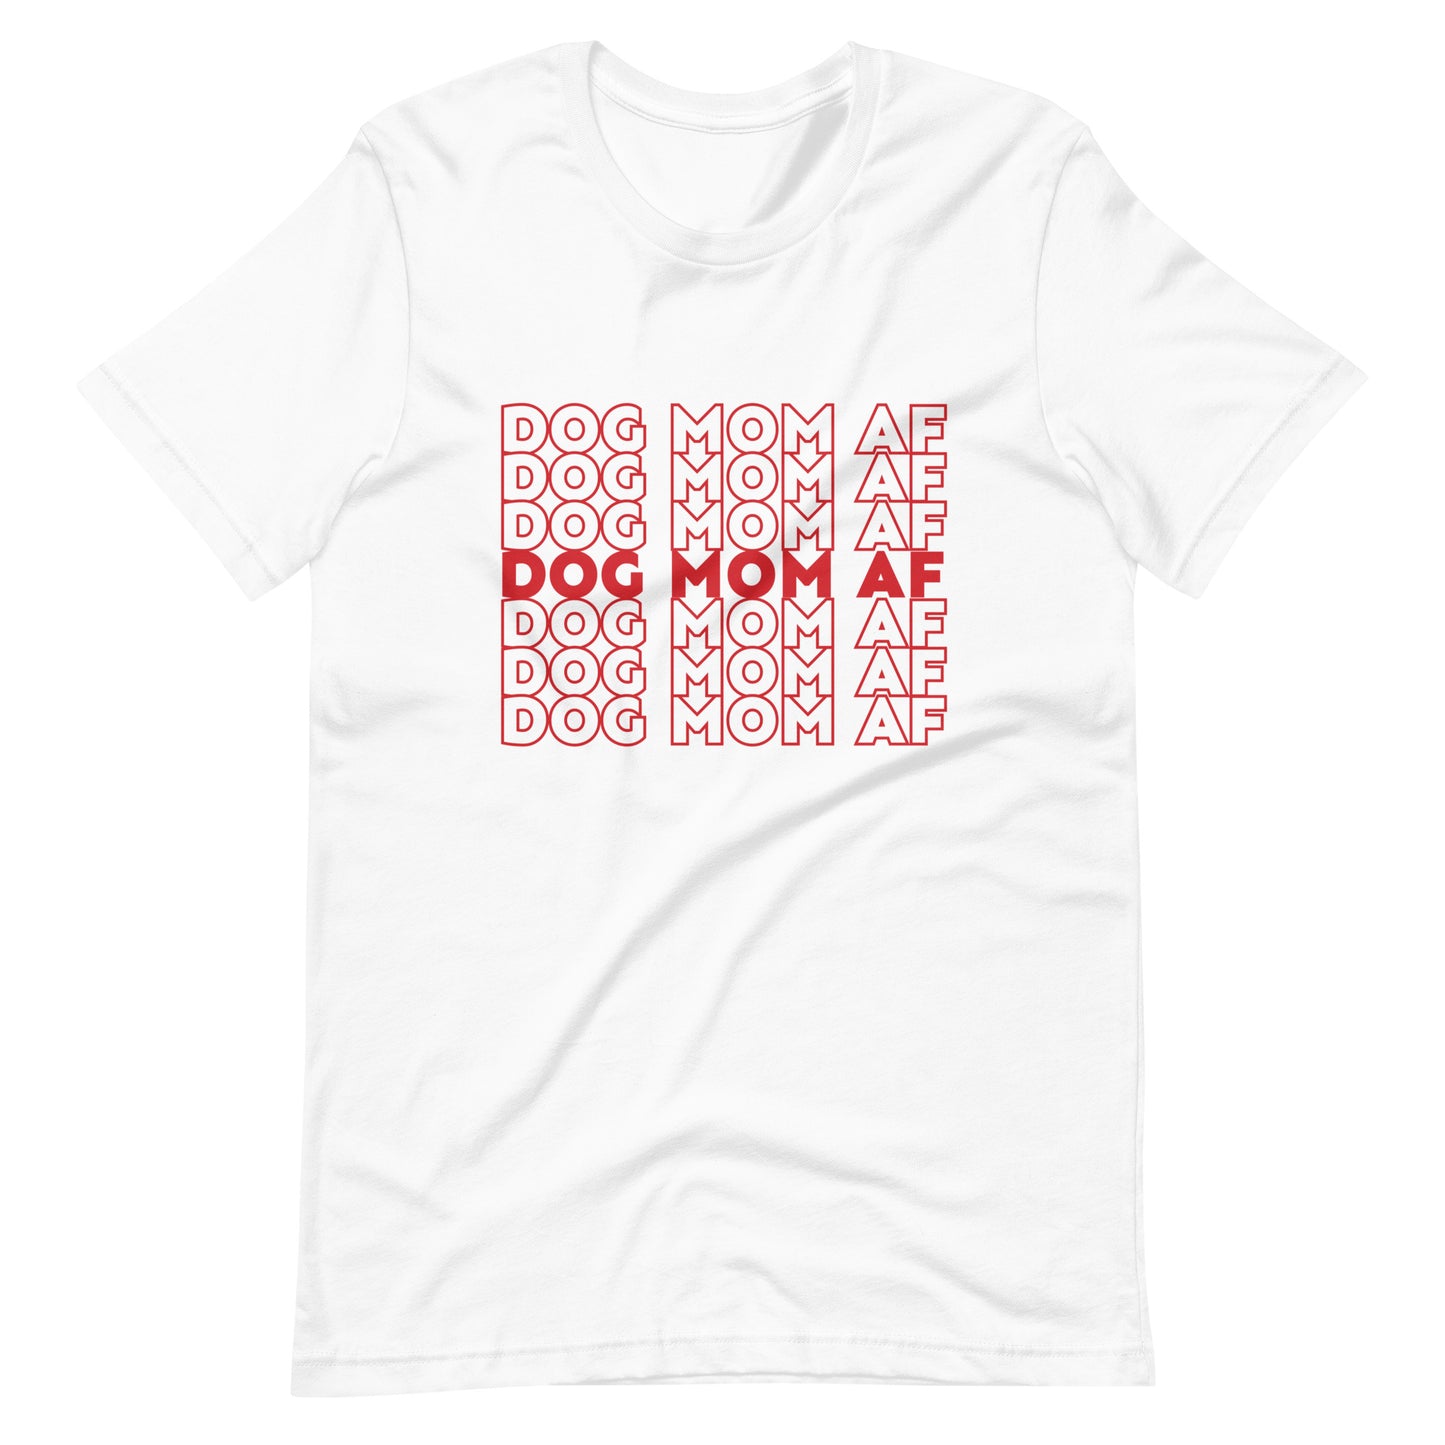 "Dog Mom AF" Shirt